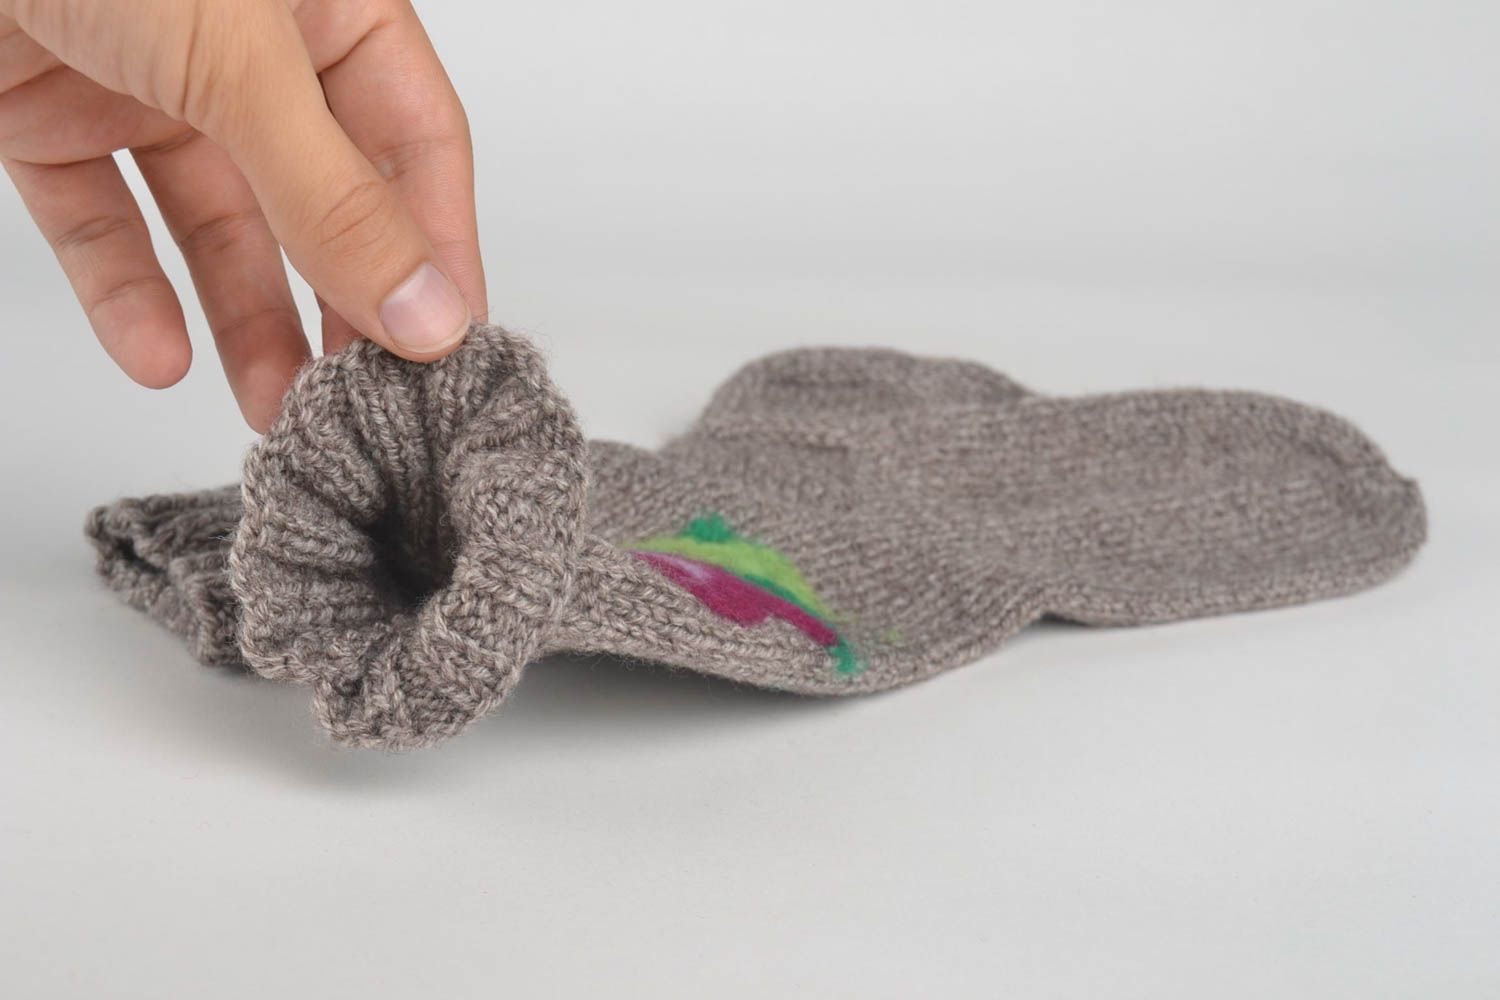 Calcetines tejidos a crochet artesanales ropa para mujer regalo original foto 5